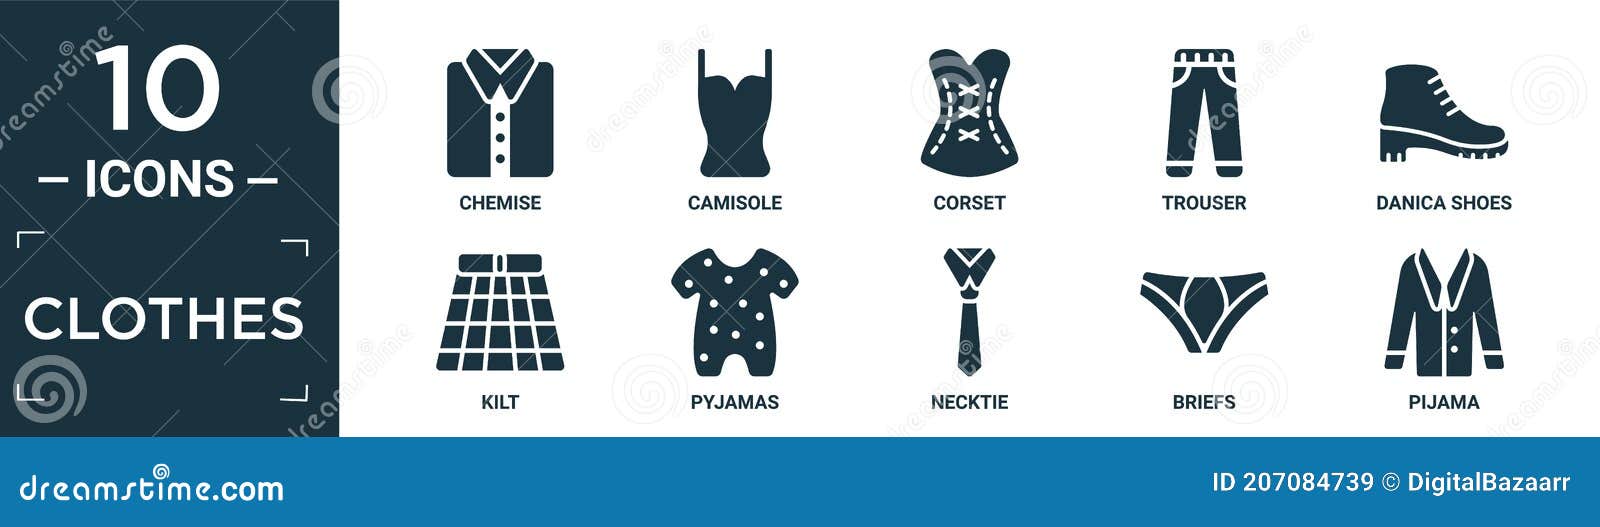 filled clothes icon set. contain flat chemise, camisole, corset, trouser, danica shoes, kilt, pyjamas, necktie, briefs, pijama